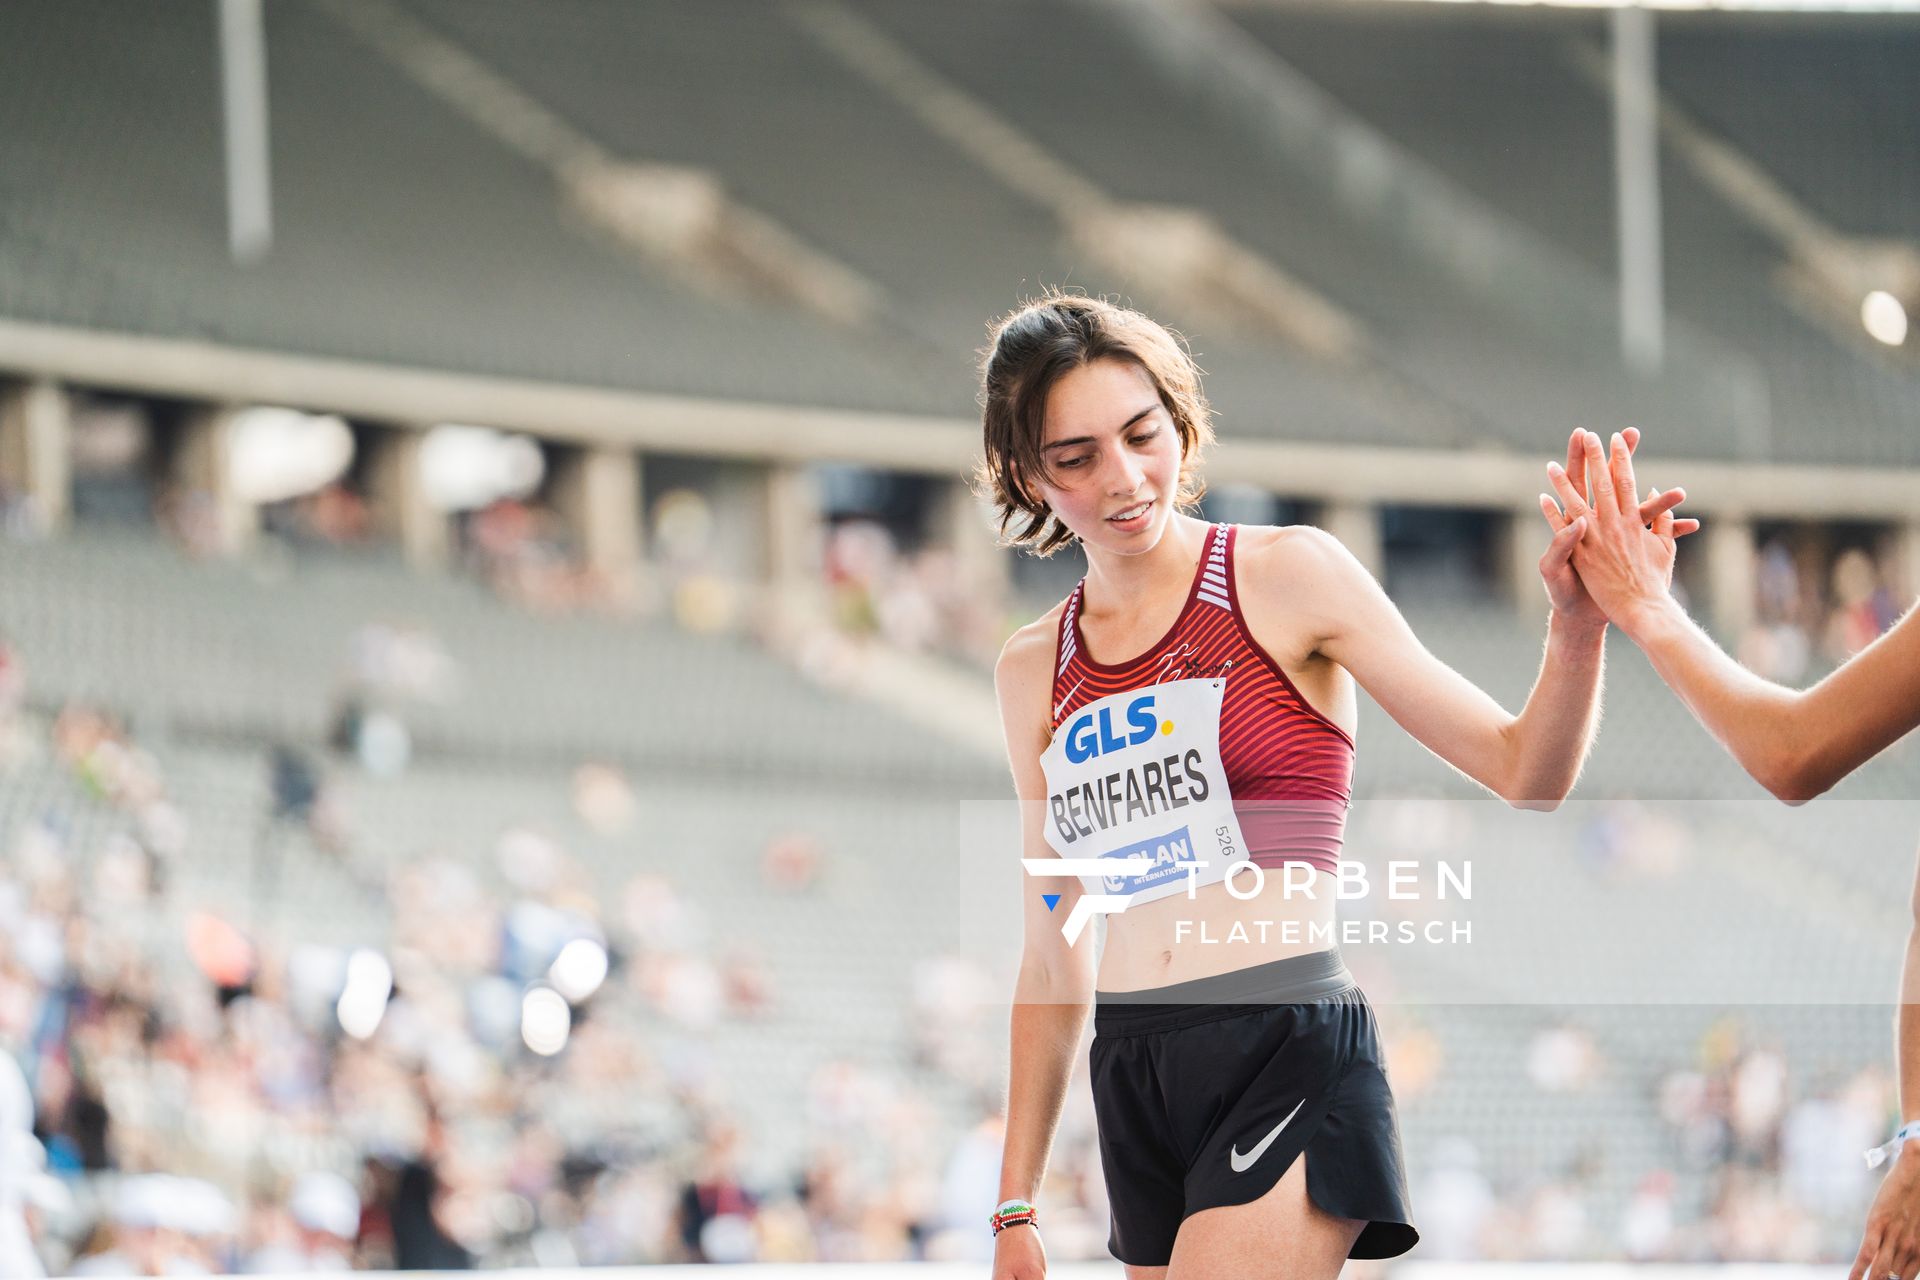 Sara Benfares (LC Rehlingen) ueber 5000m waehrend der deutschen Leichtathletik-Meisterschaften im Olympiastadion am 26.06.2022 in Berlin